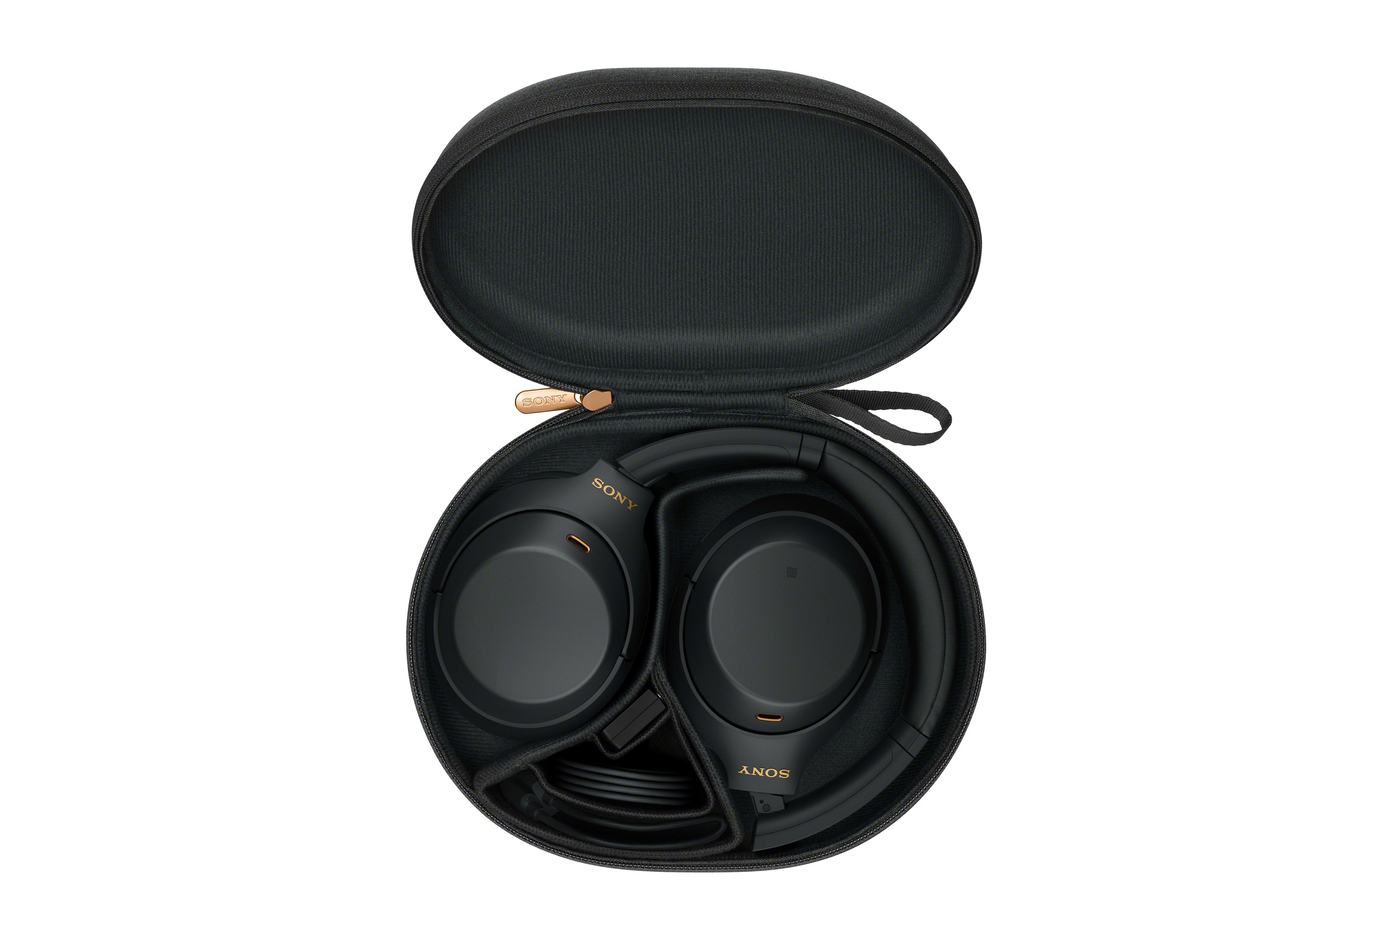 Sony annonce la sortie du WH-1000XM4, son casque à réduction de bruit réduction de bruit